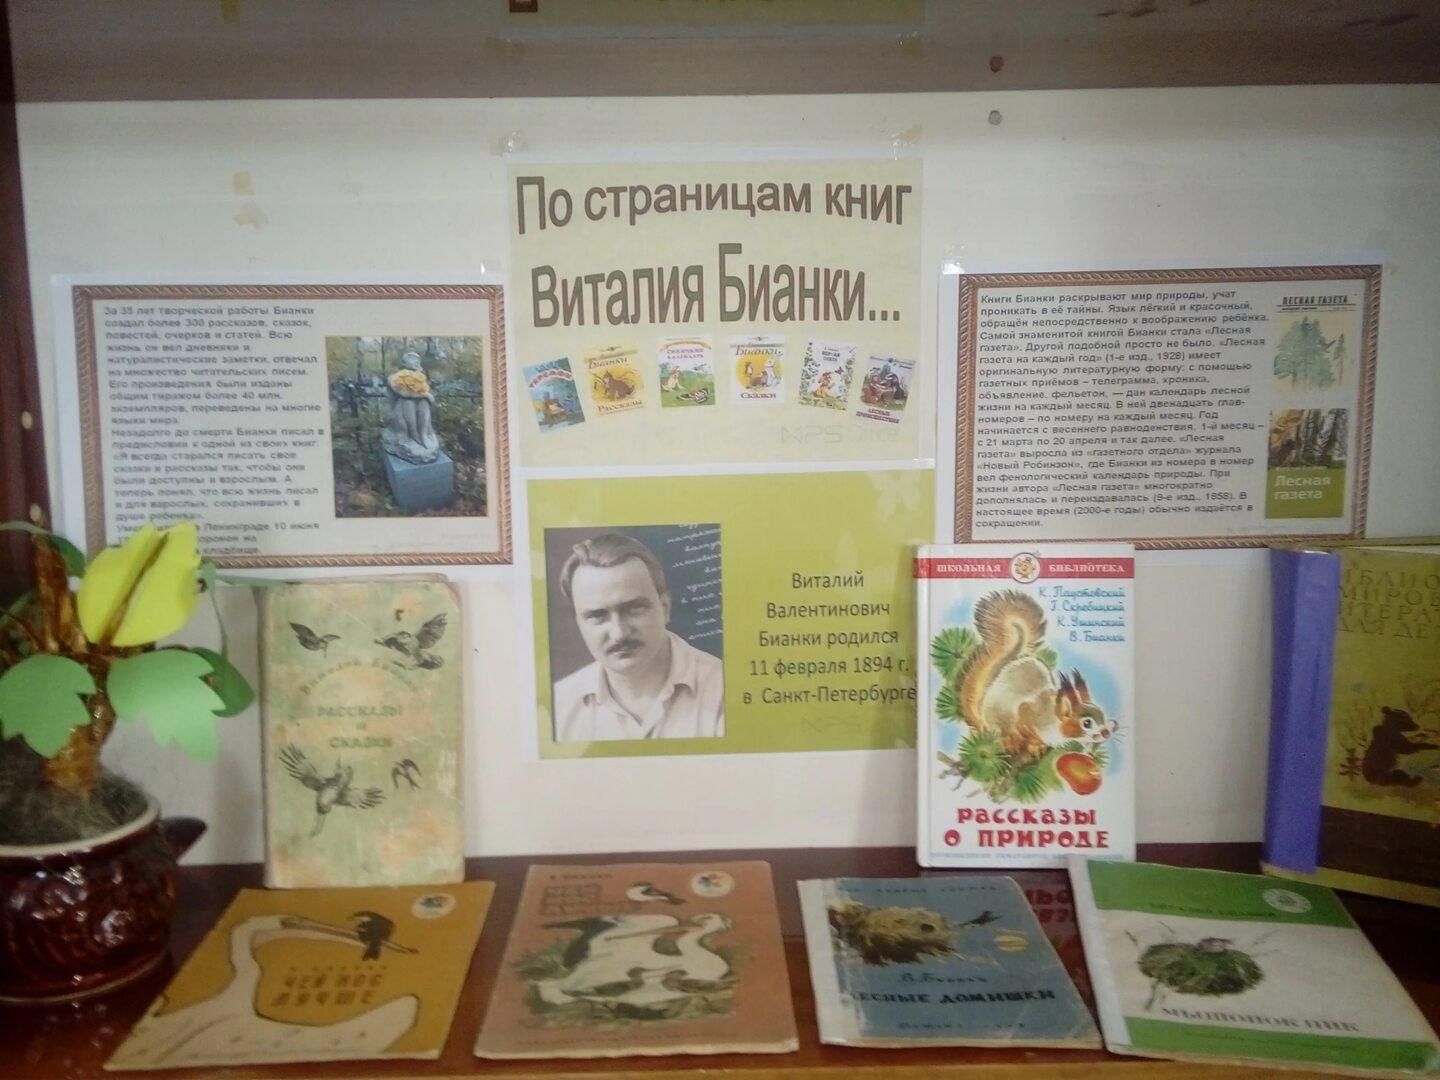 Бианки в библиотеке для детей. Выставка книг Виталия Бианки. Выставка Виталия Бианки.